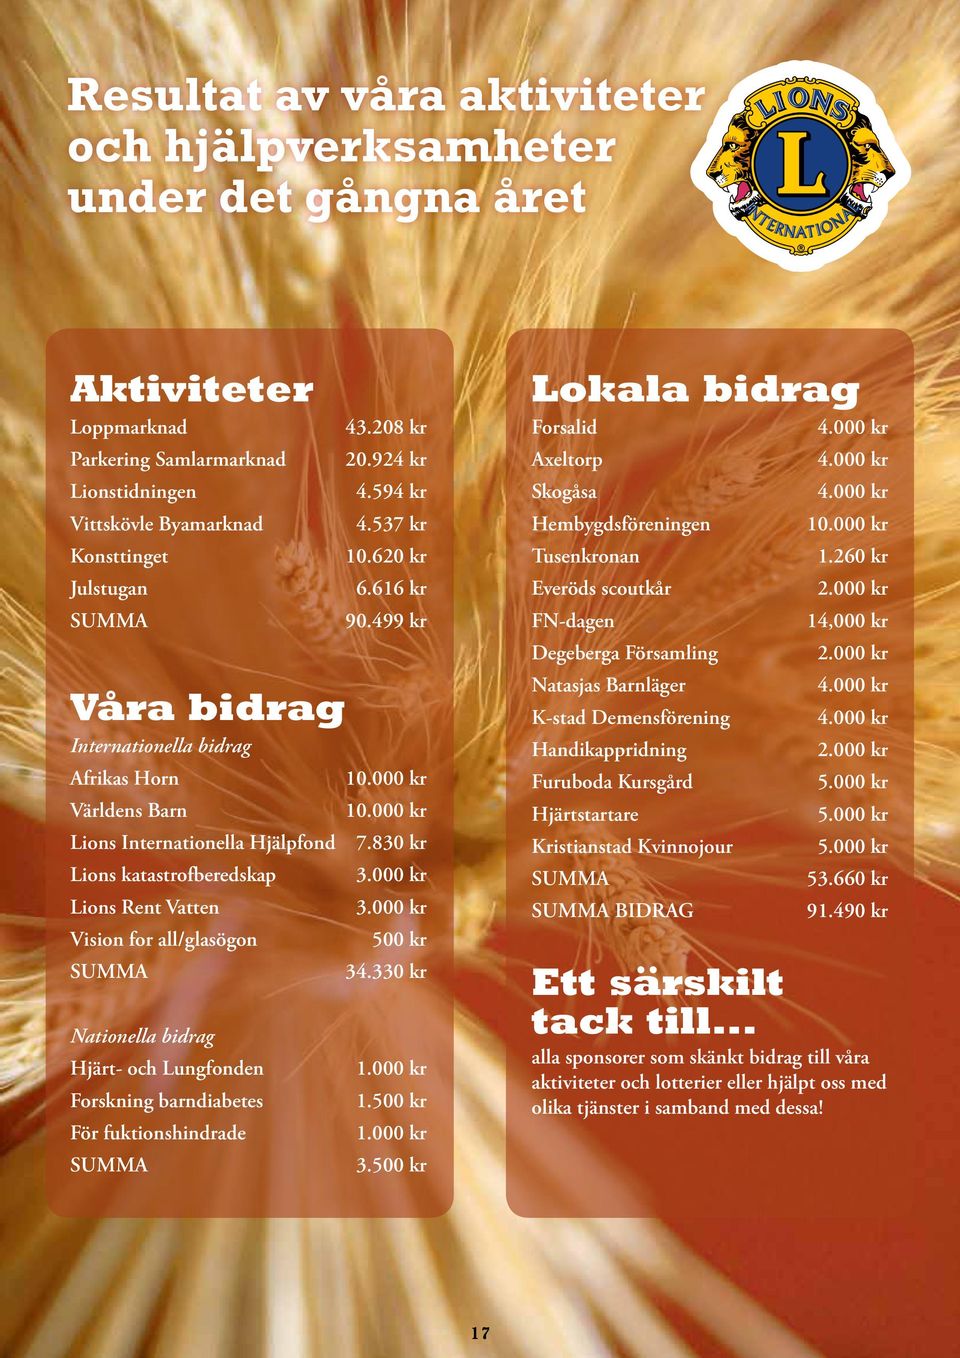 830 kr Lions katastrofberedskap 3.000 kr Lions Rent Vatten 3.000 kr Vision for all/glasögon 500 kr SUMMA 34.